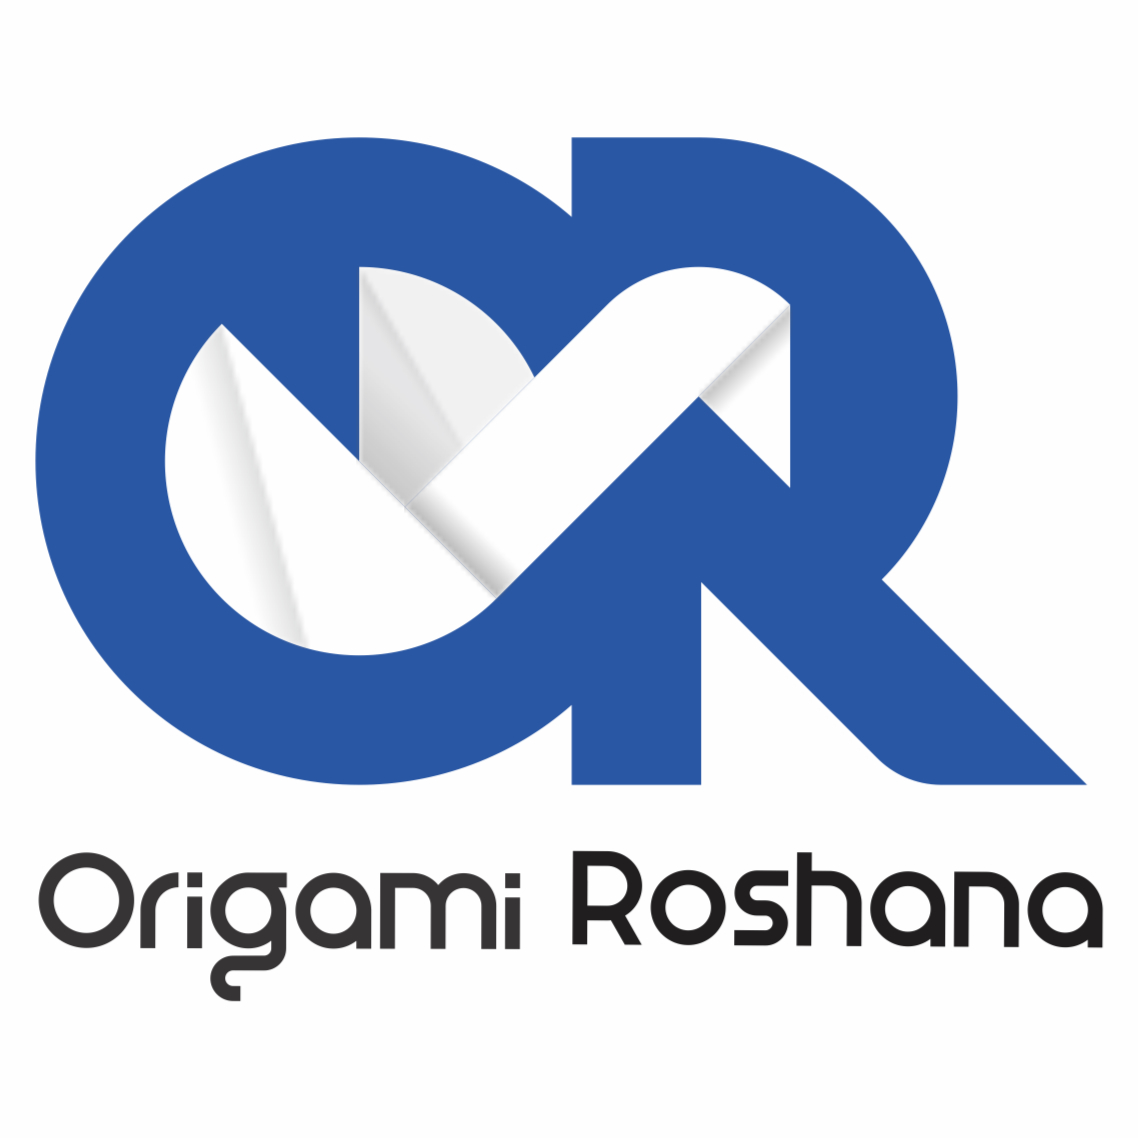 موسسه سرزمین کاغذوتا(روشنا اوریگامی) www.OrigamiRoshana.com